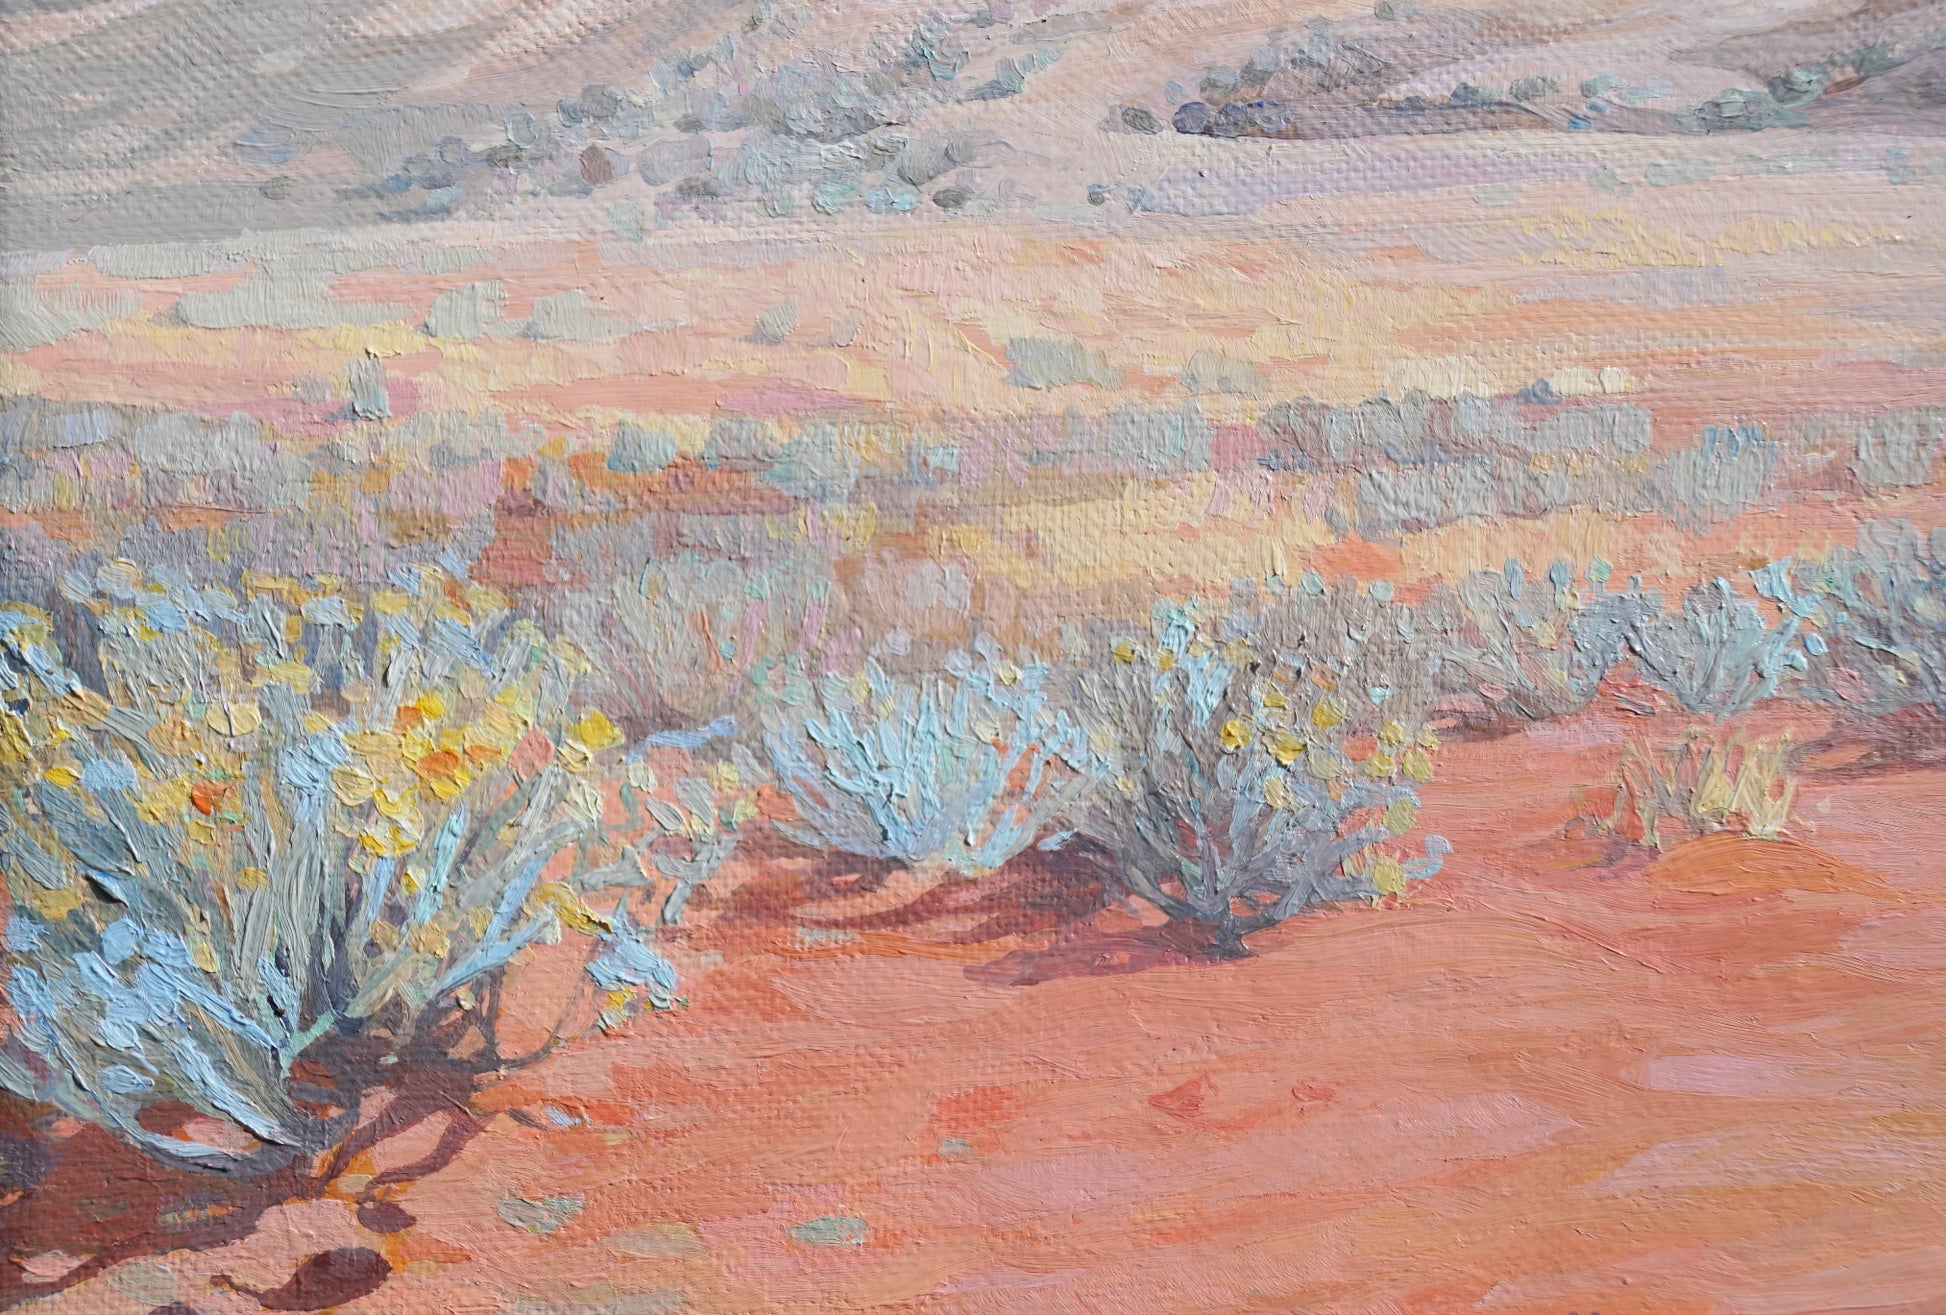 Desert and Blue Bush Landscape painting by Australian artist Jaime Prosser